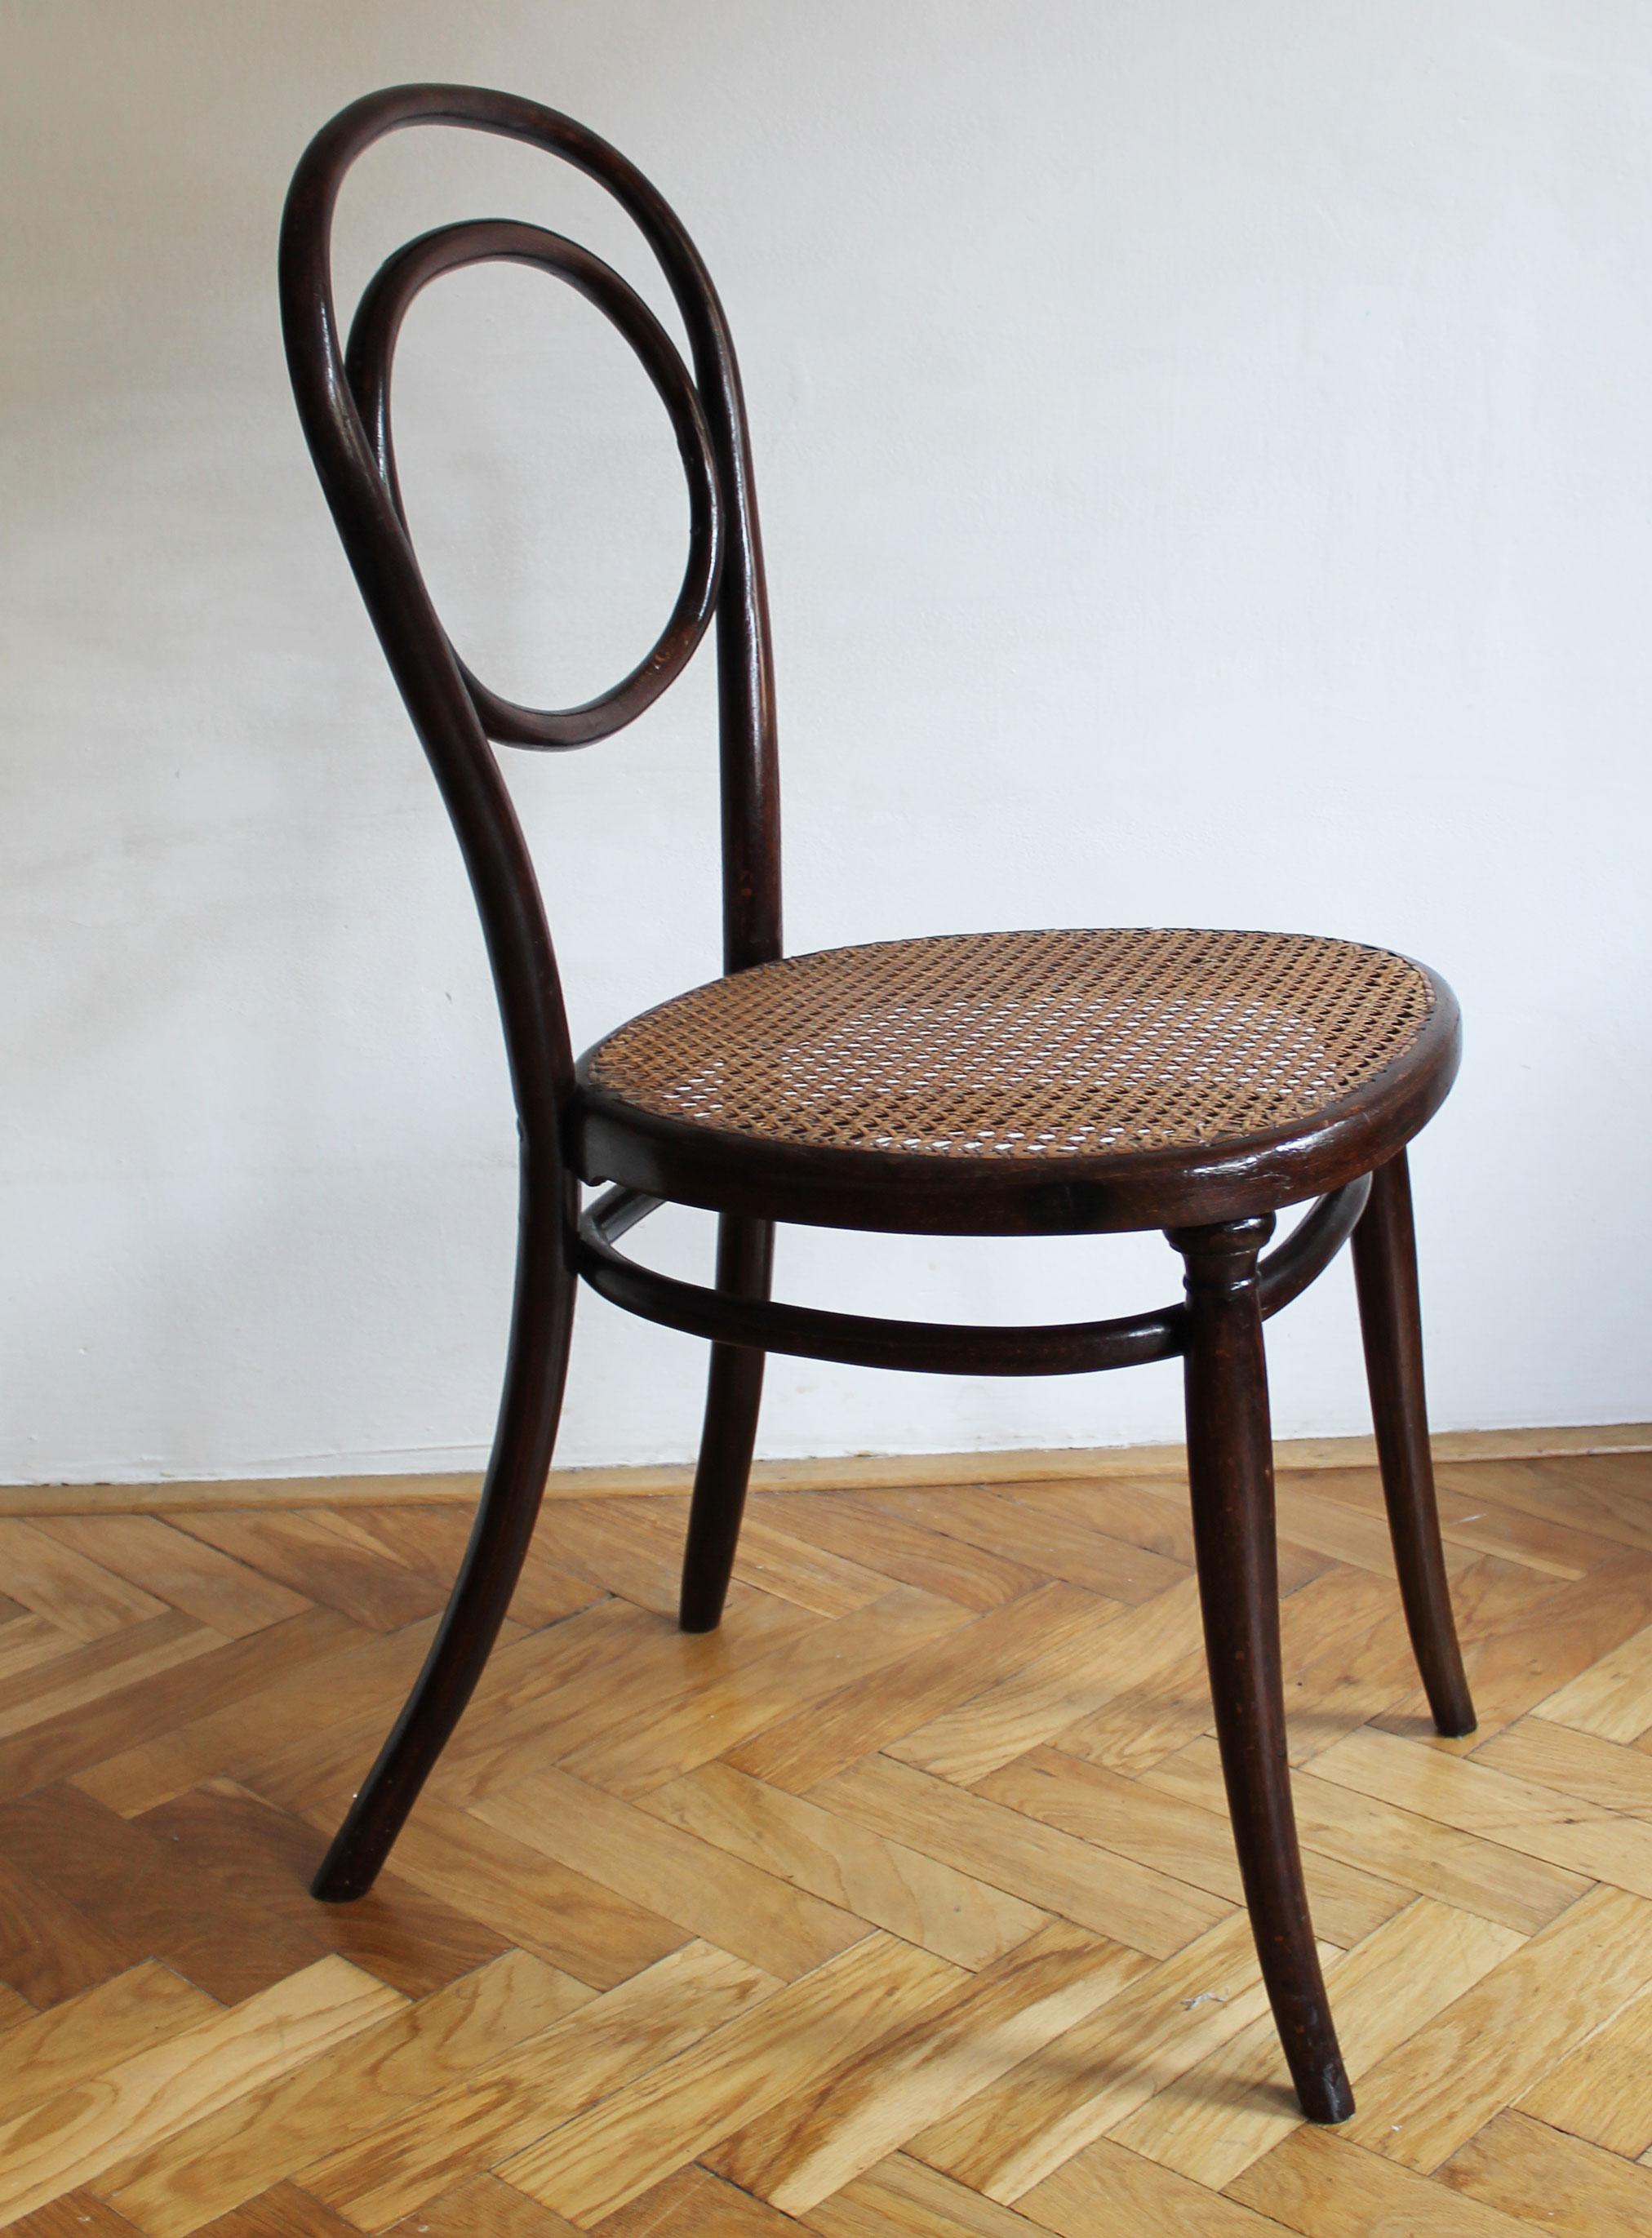 Rare chaise de salle à manger en bois courbé avec une belle assise en bois à motifs et en rotin tressé. Cette pièce a été conçue et fabriquée par Gebrüder Thonet vers 1850. Cette chaise figure dans l'ancien catalogue de meubles de Thonet sous le nom